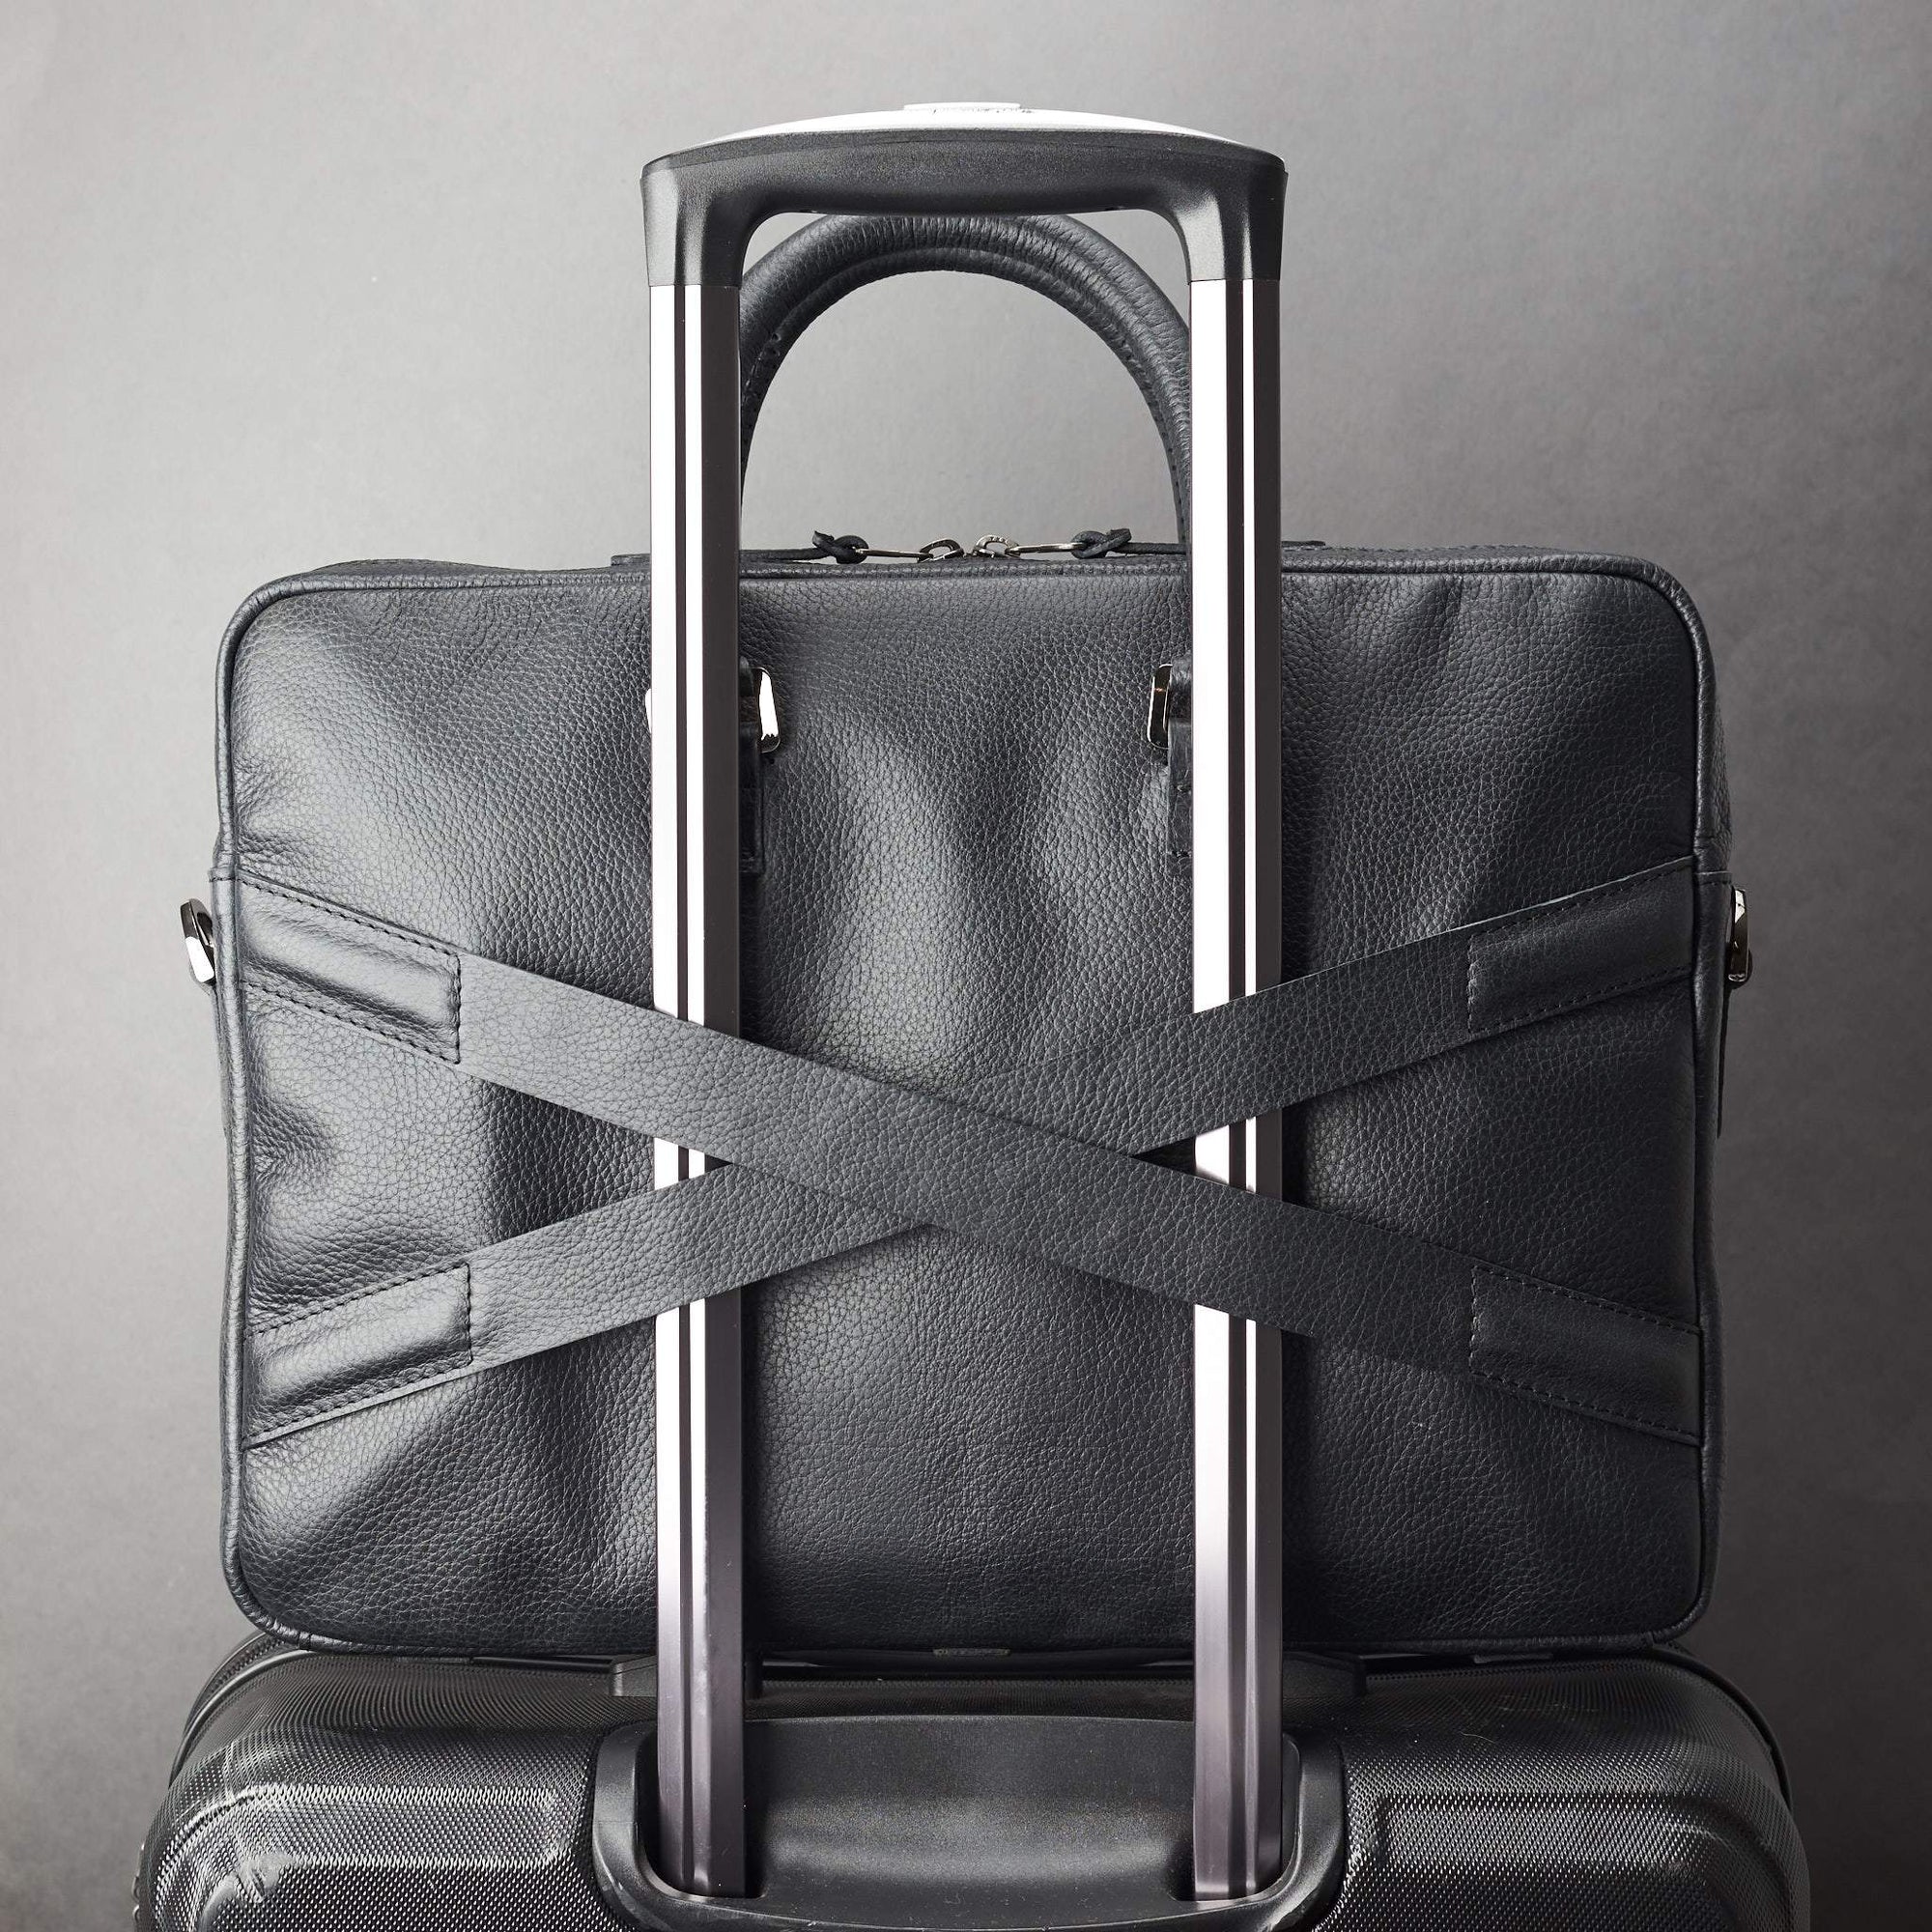 Luggage strap in x shape for messenger bag. Black leather briefcase laptop bag for men. Gazeli laptop briefcase by Capra Leather.